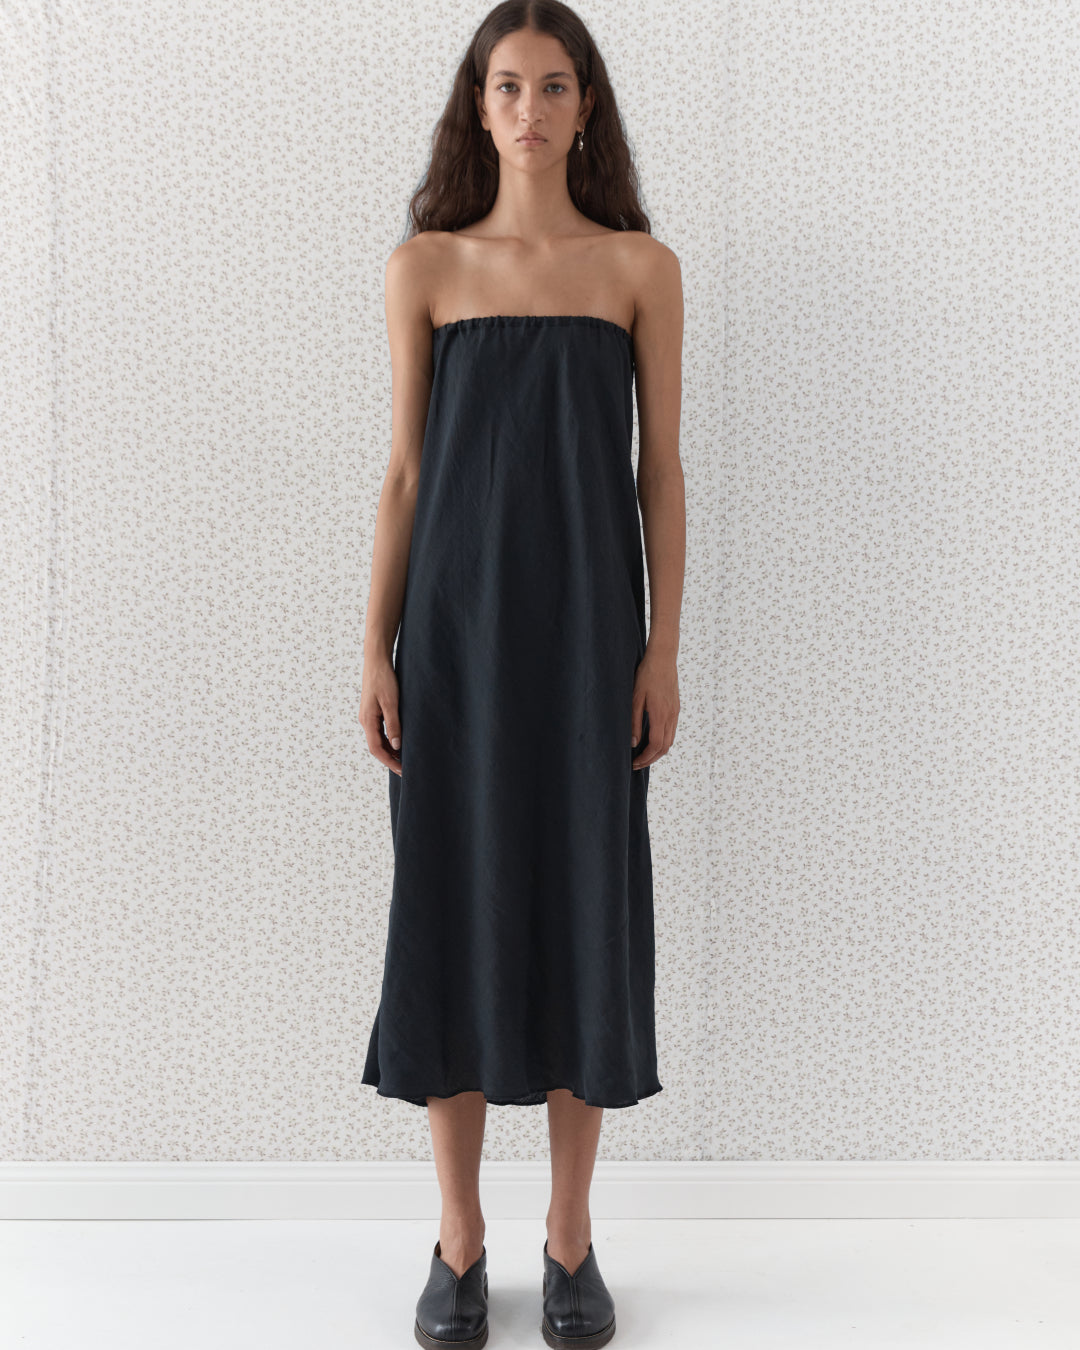 The Strapless Linen Dress | Black